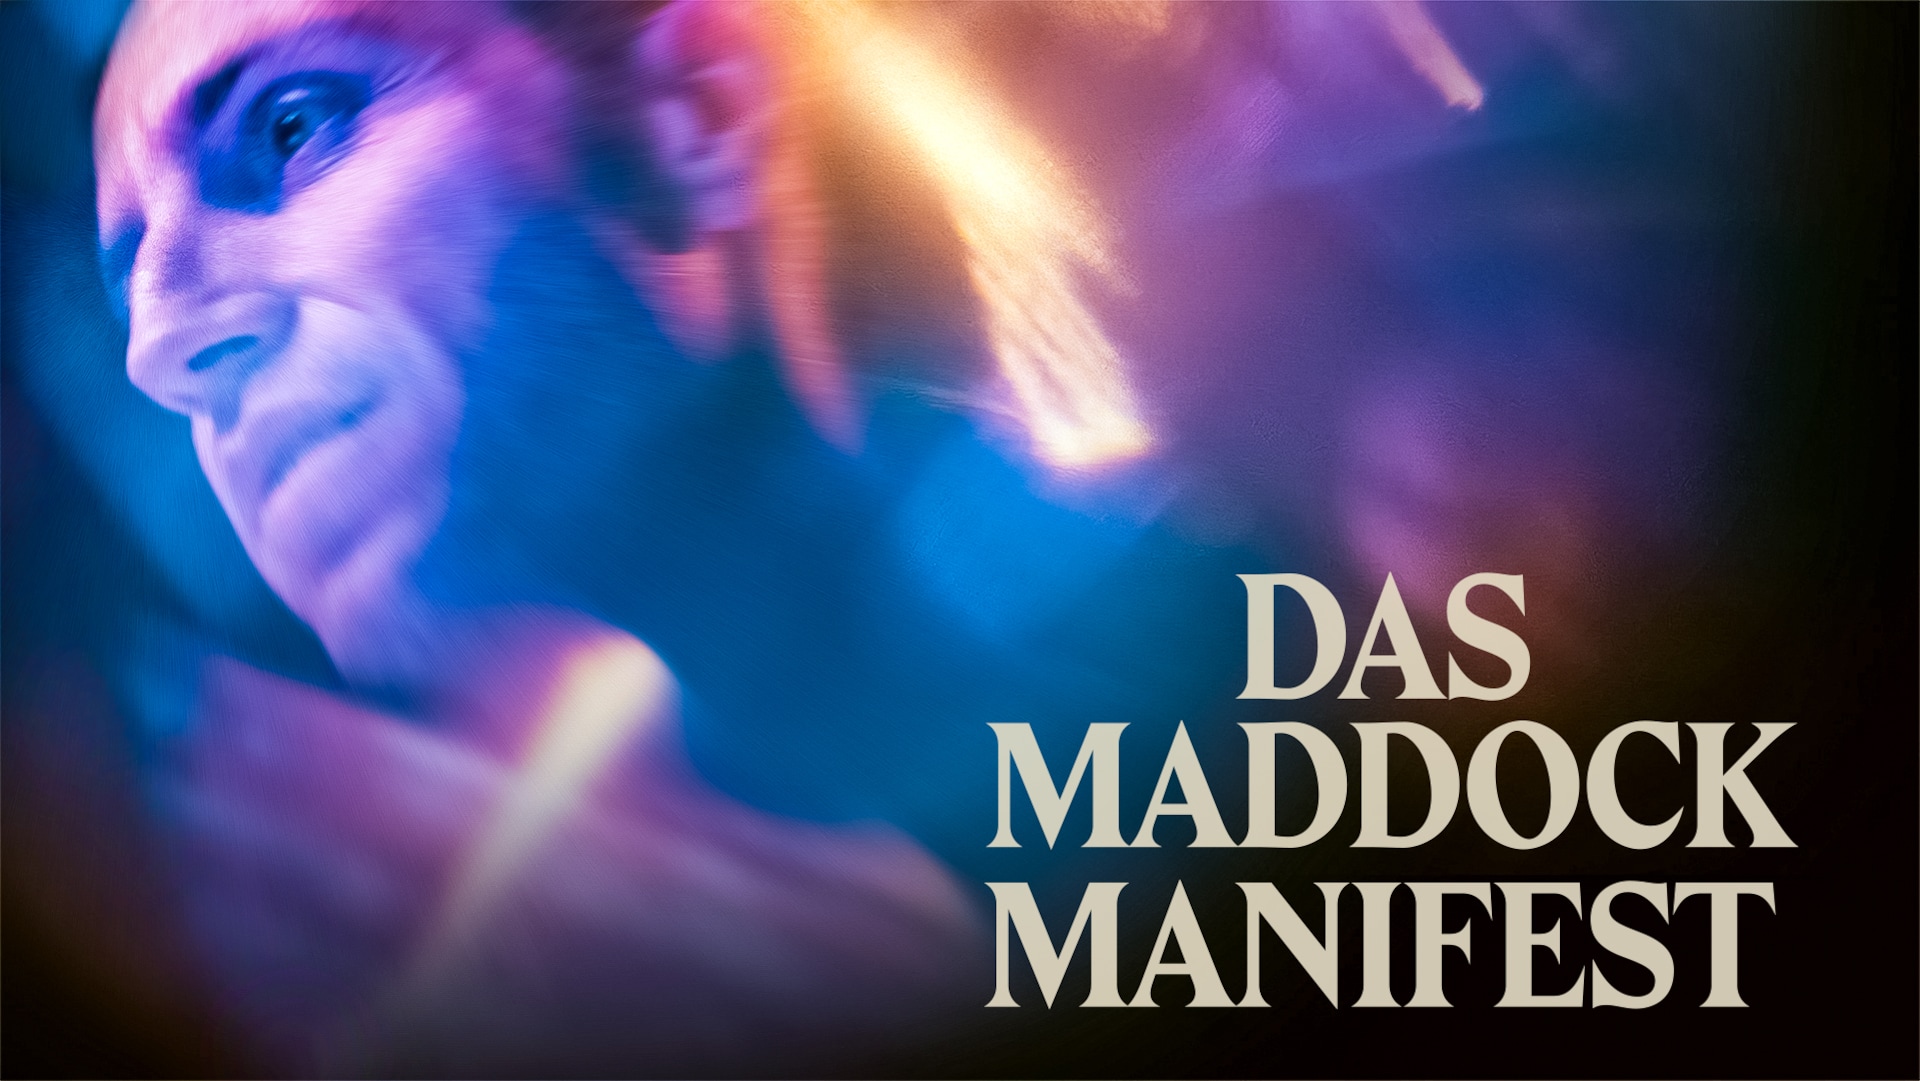 Das Maddock Manifest